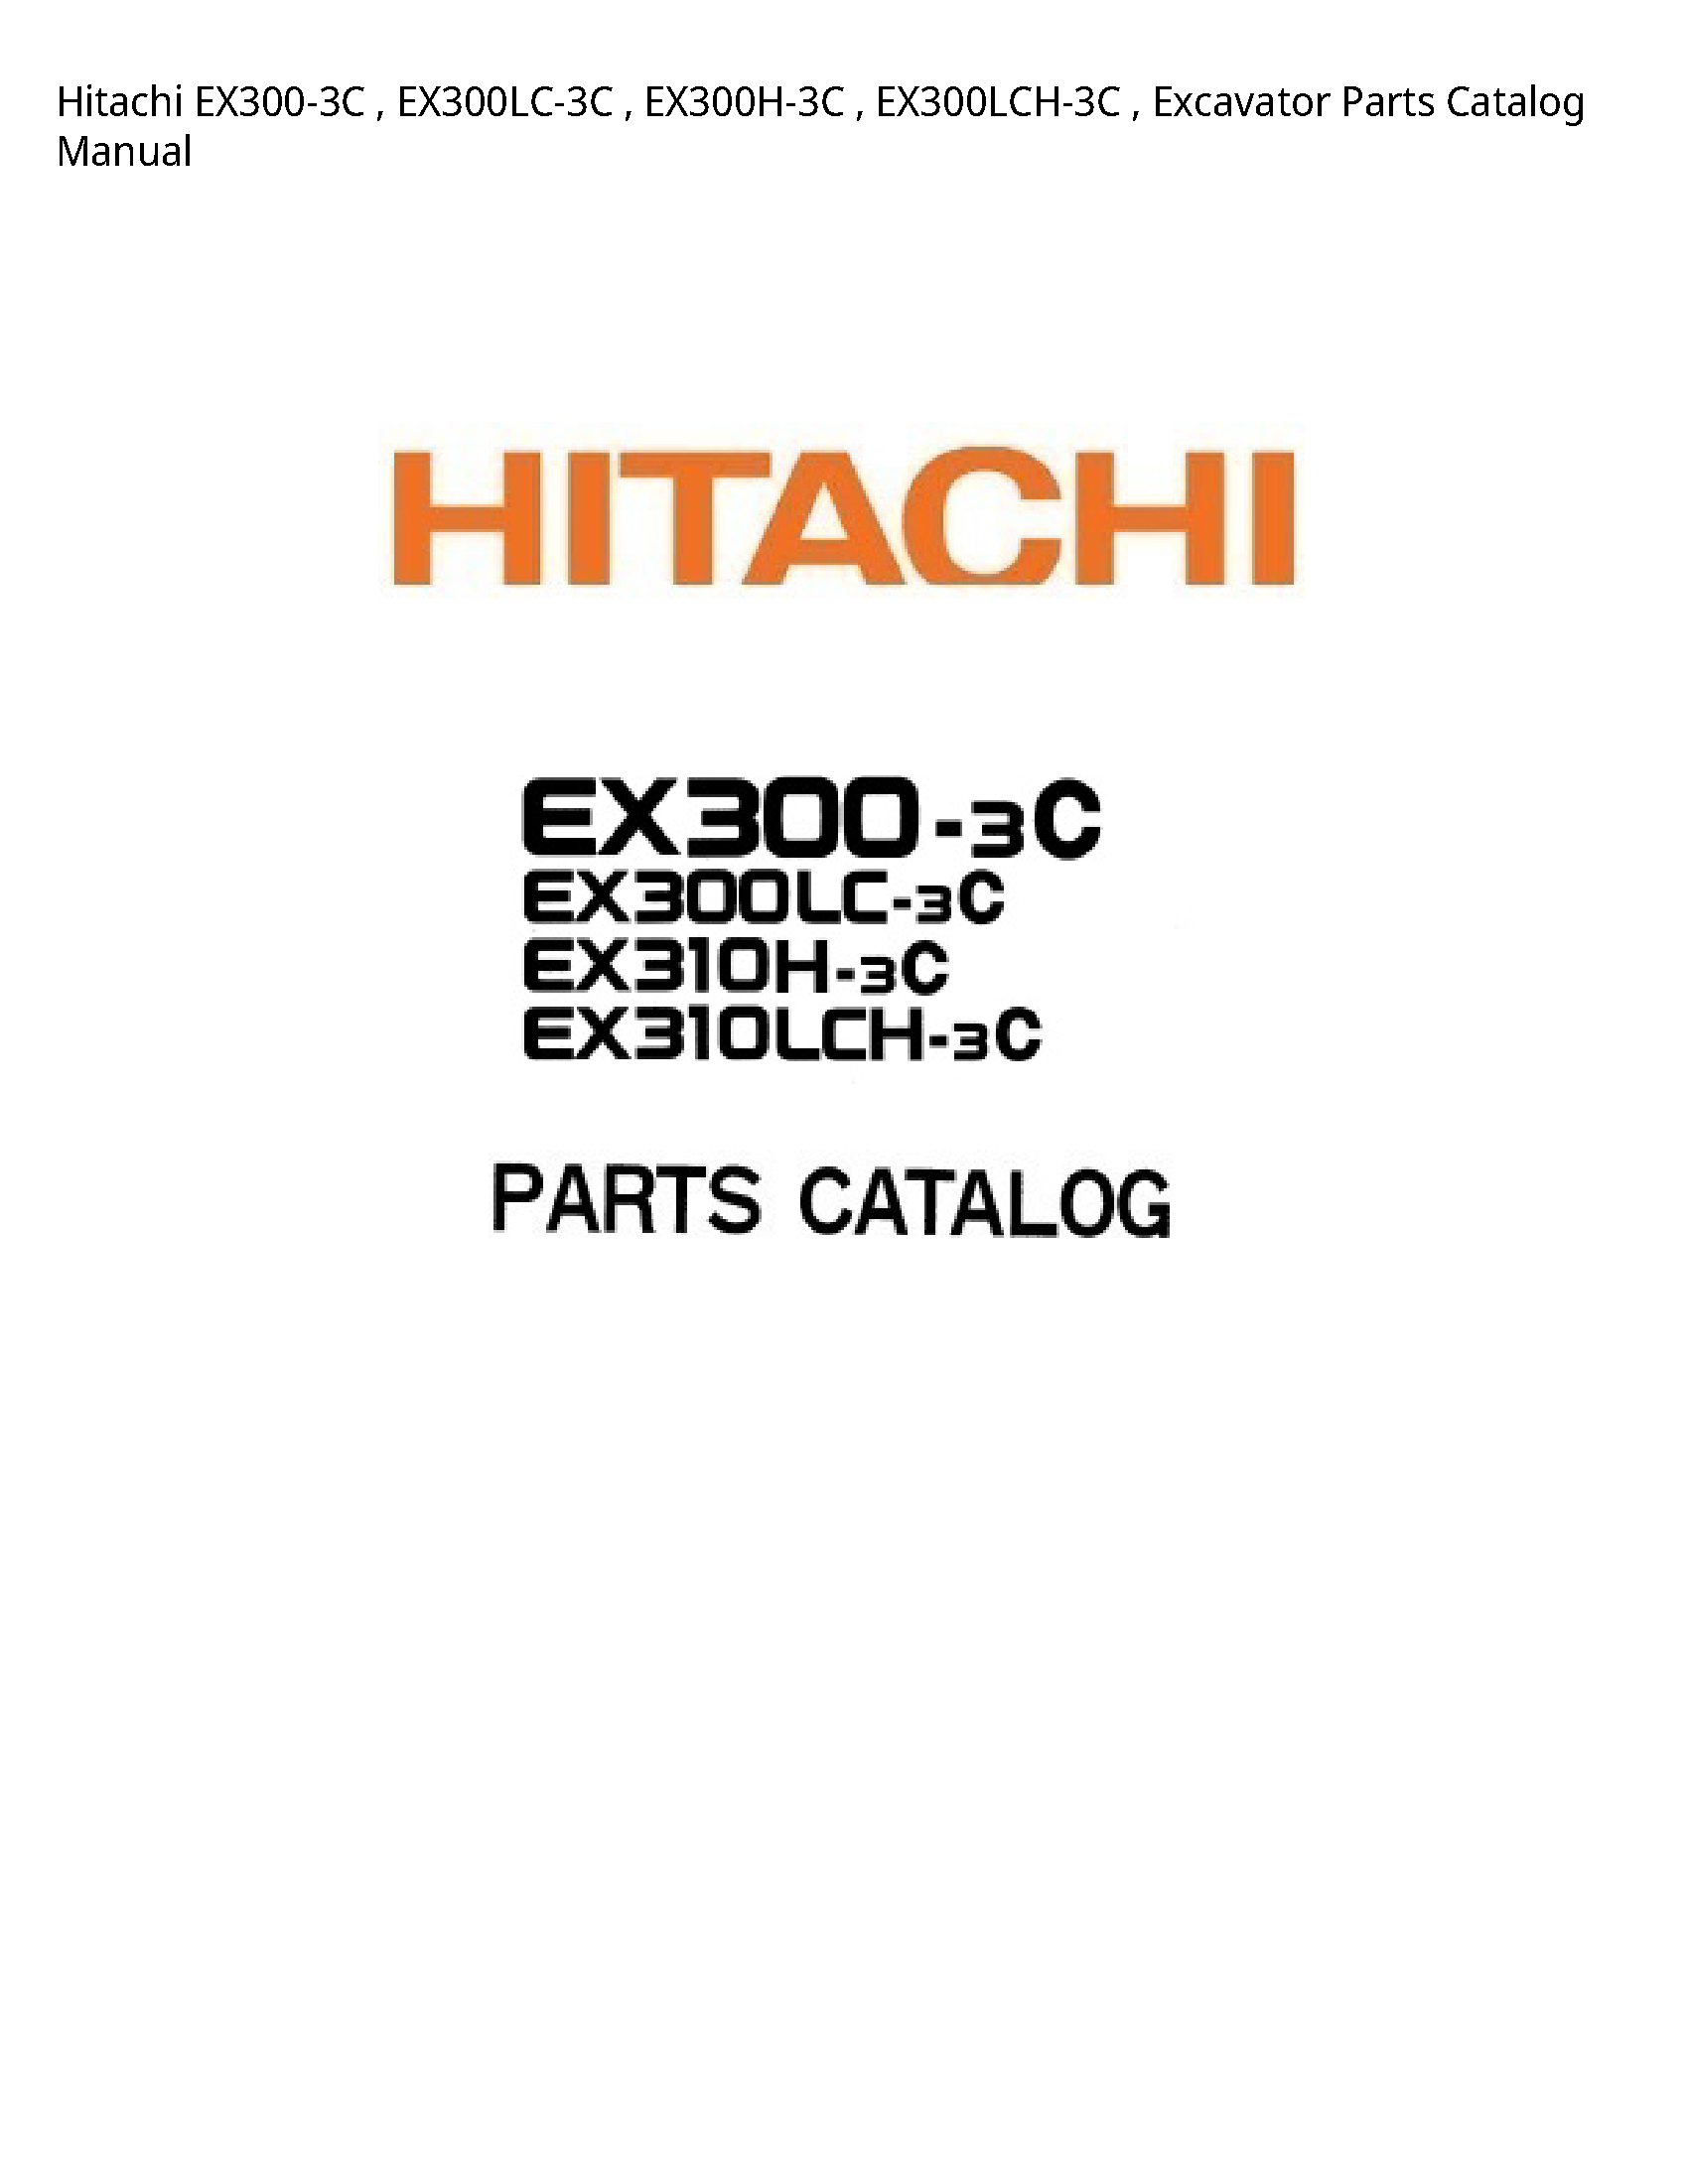 Hitachi EX300-3C Excavator Parts Catalog manual